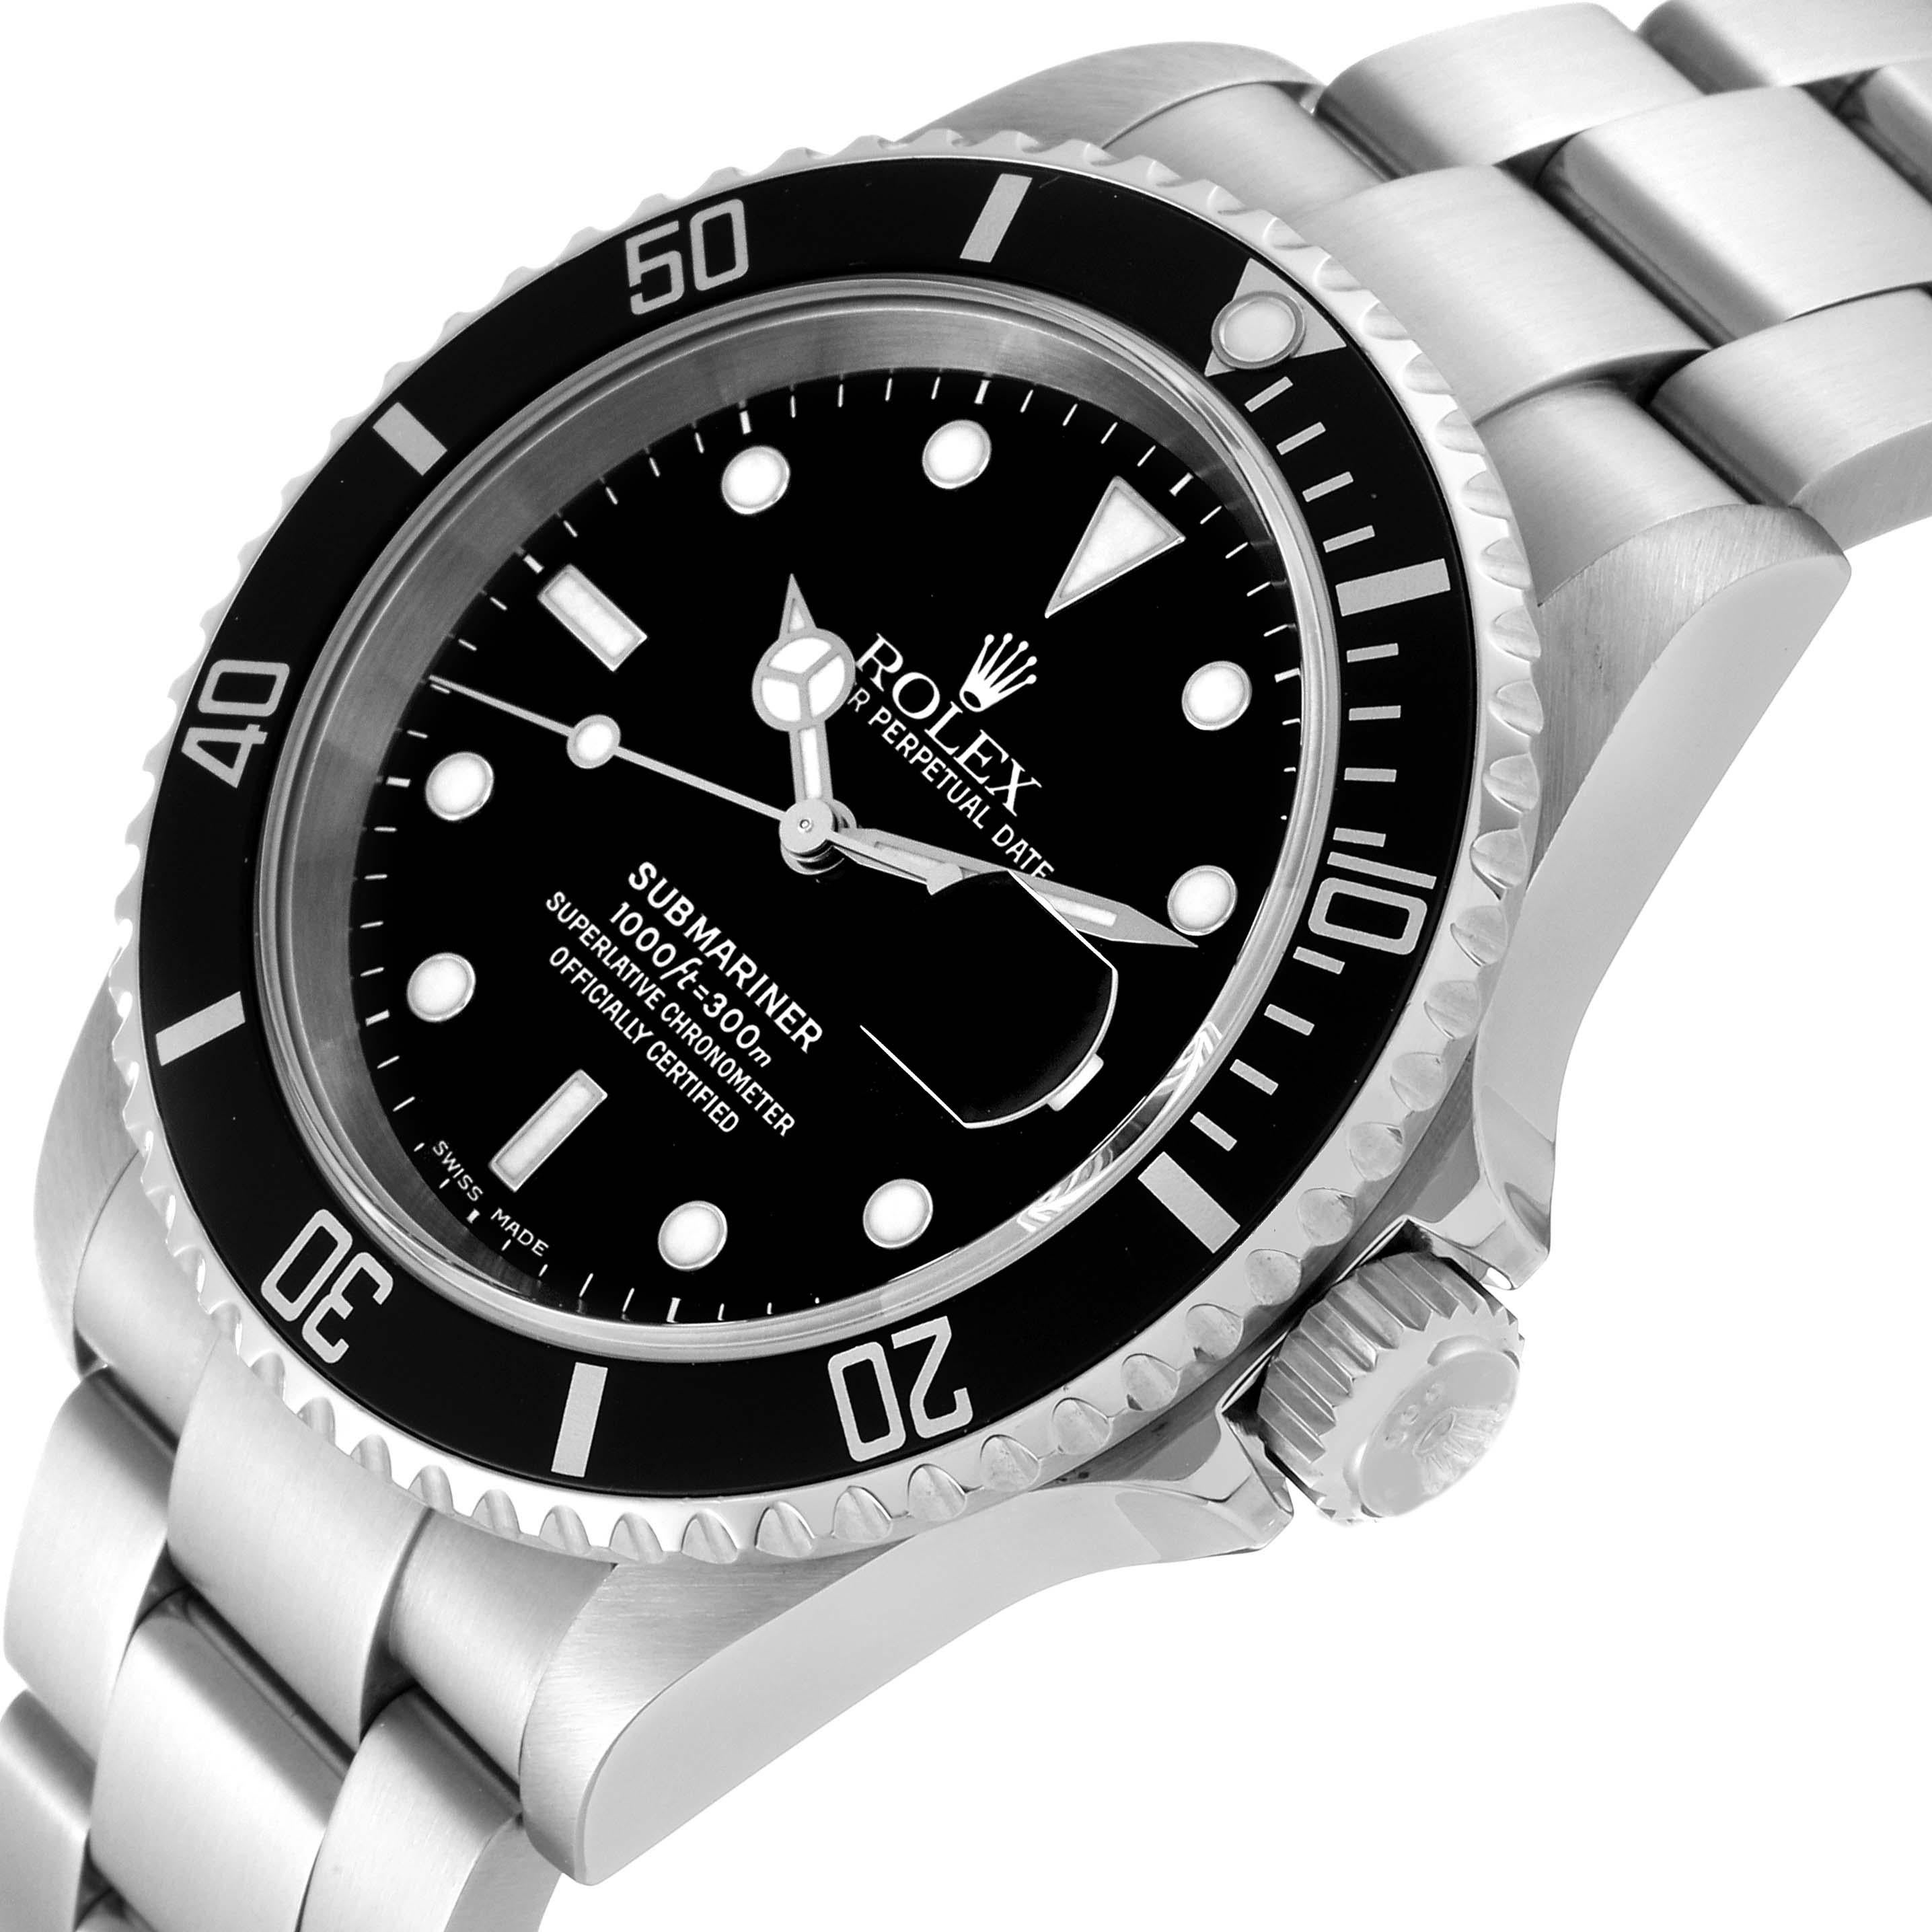 Rolex Submariner Date Schwarzes Zifferblatt Stahl Herrenuhr 16610. Offiziell zertifiziertes Chronometerwerk mit automatischem Aufzug. Gehäuse aus Edelstahl mit einem Durchmesser von 40.0 mm. Rolex Logo auf der Krone. Spezielle einseitig drehbare